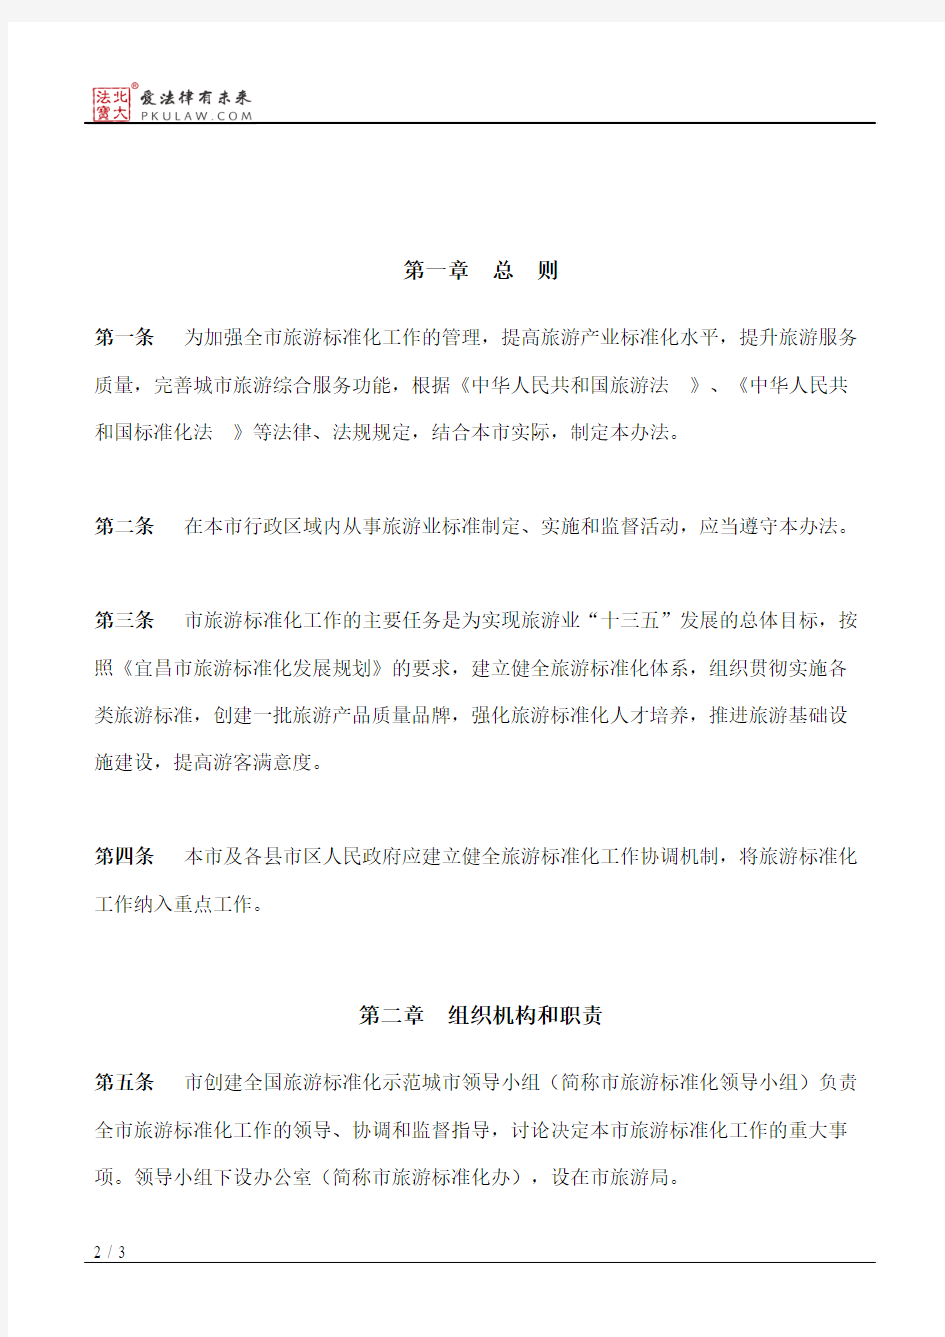 宜昌市人民政府办公室关于印发宜昌市旅游标准化工作管理办法的通知